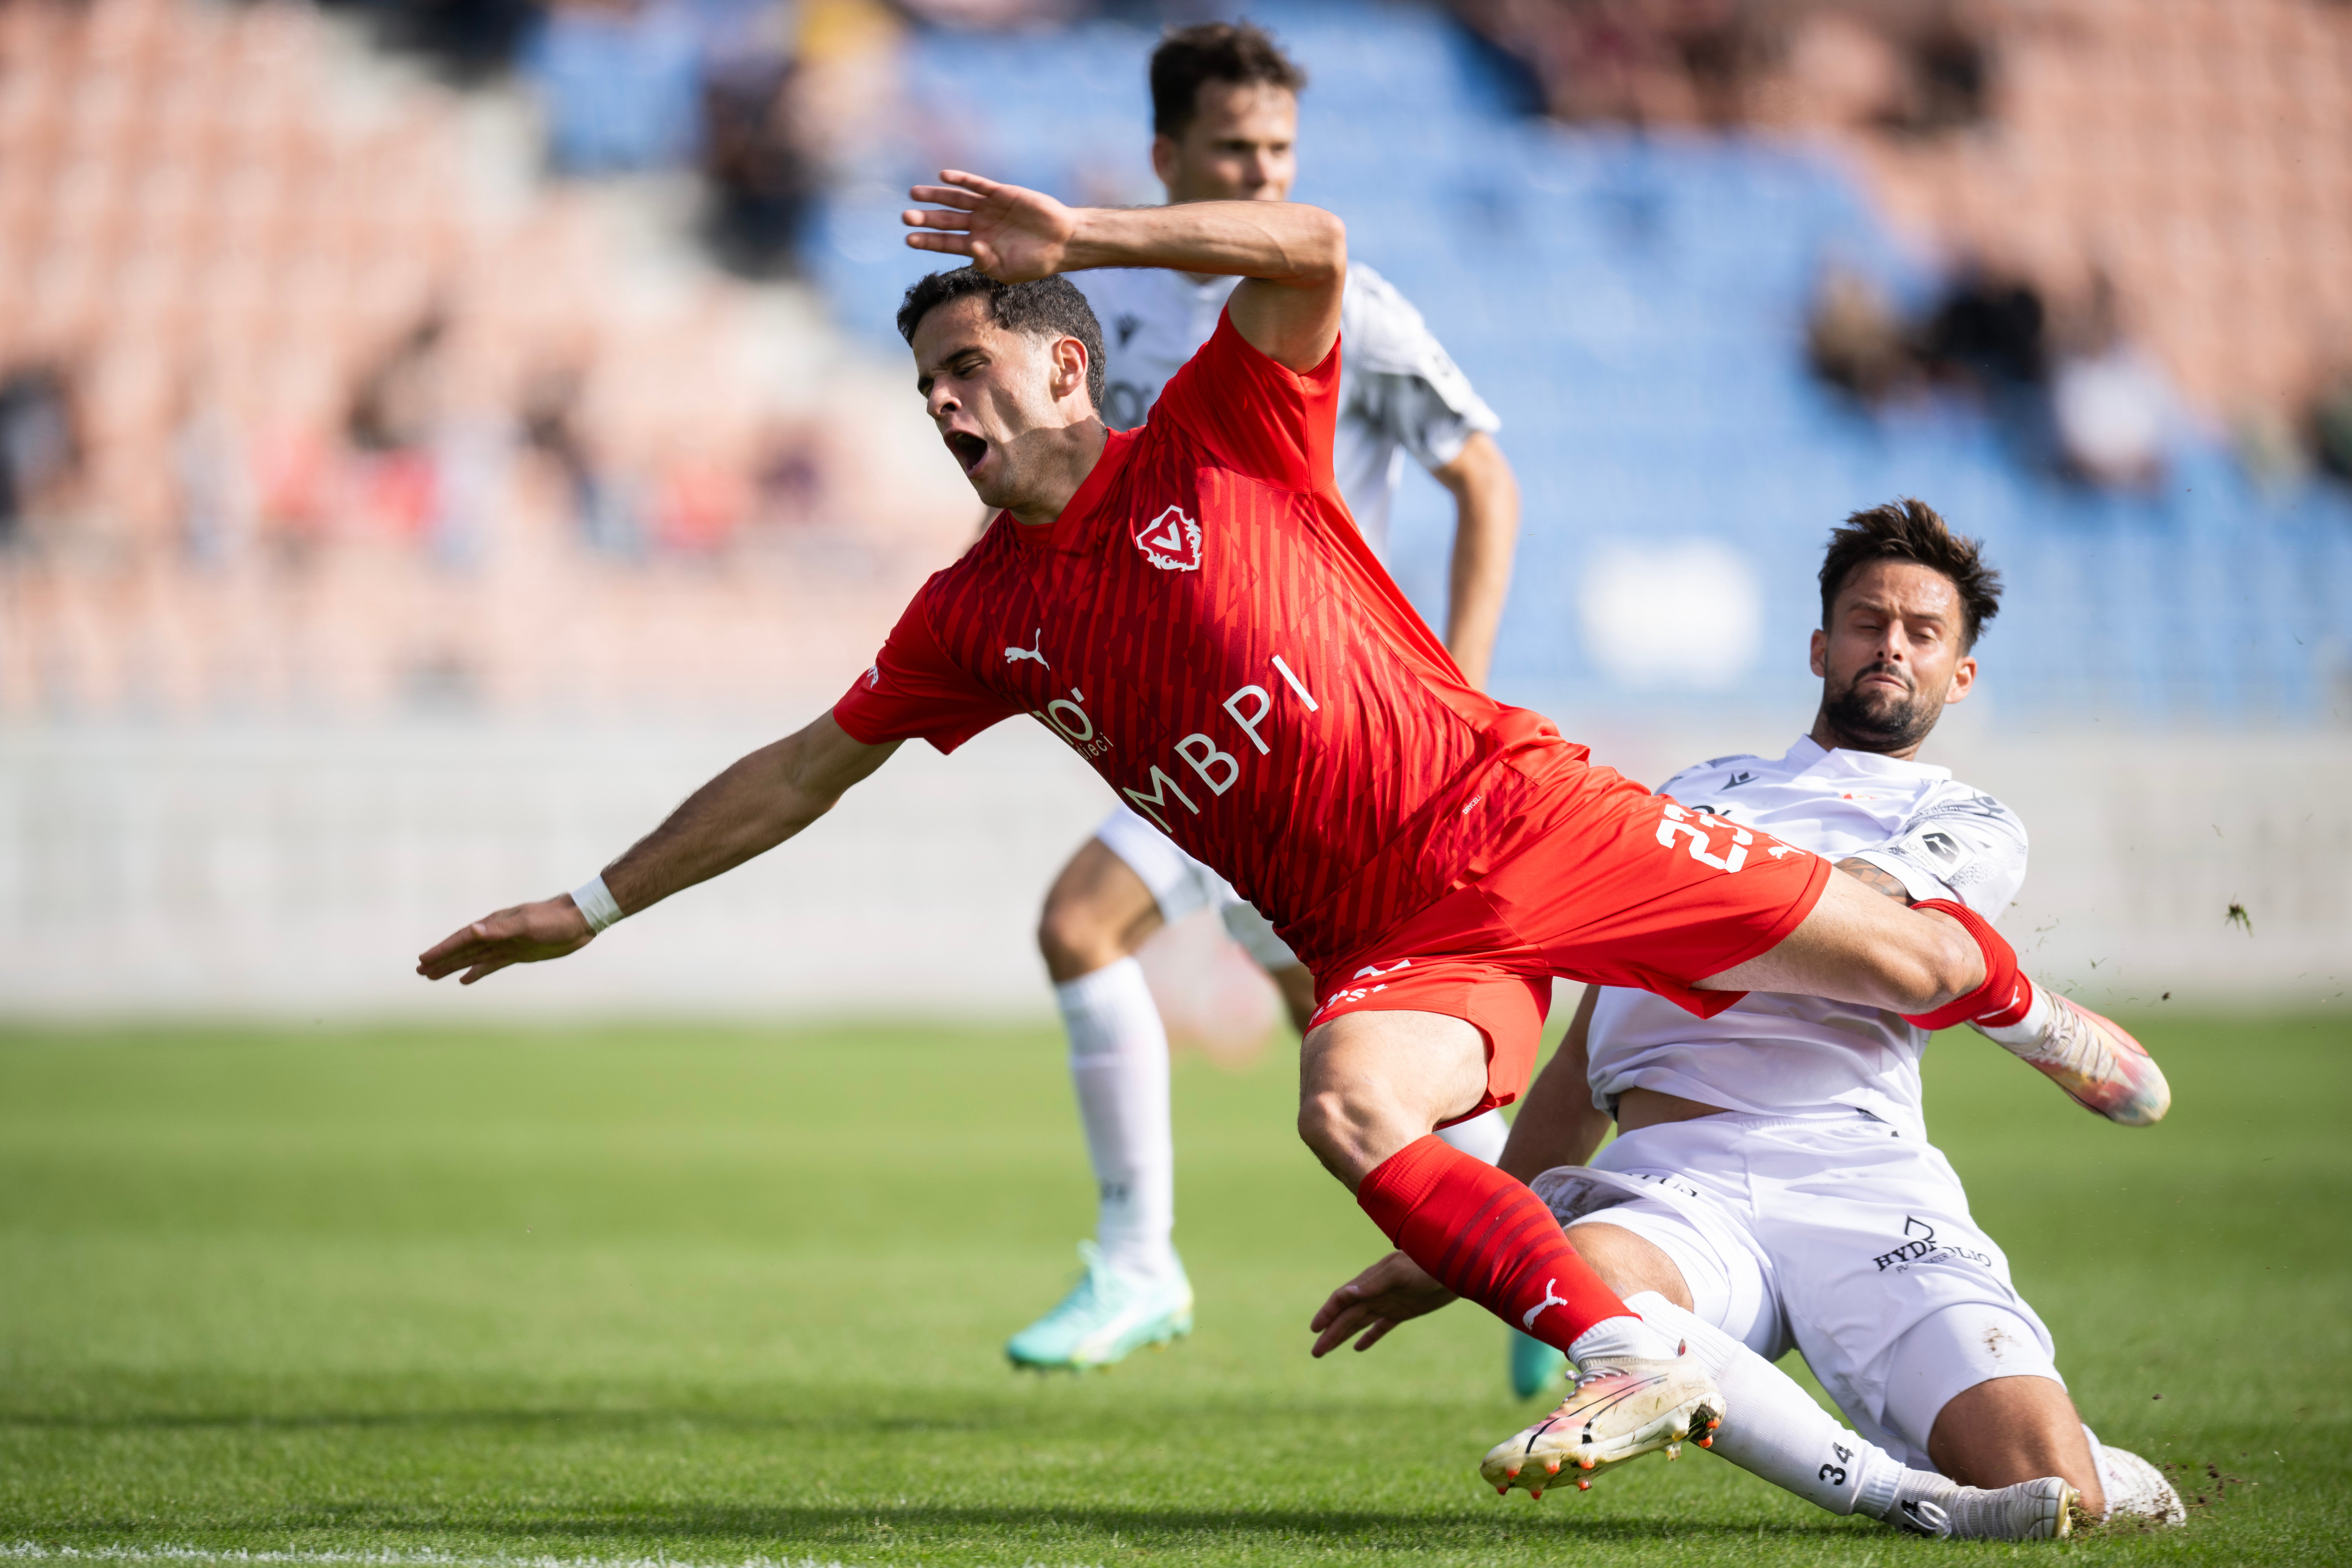 Der FC Thun verlor nur 1 von 27 Spielen gegen den FC Vaduz